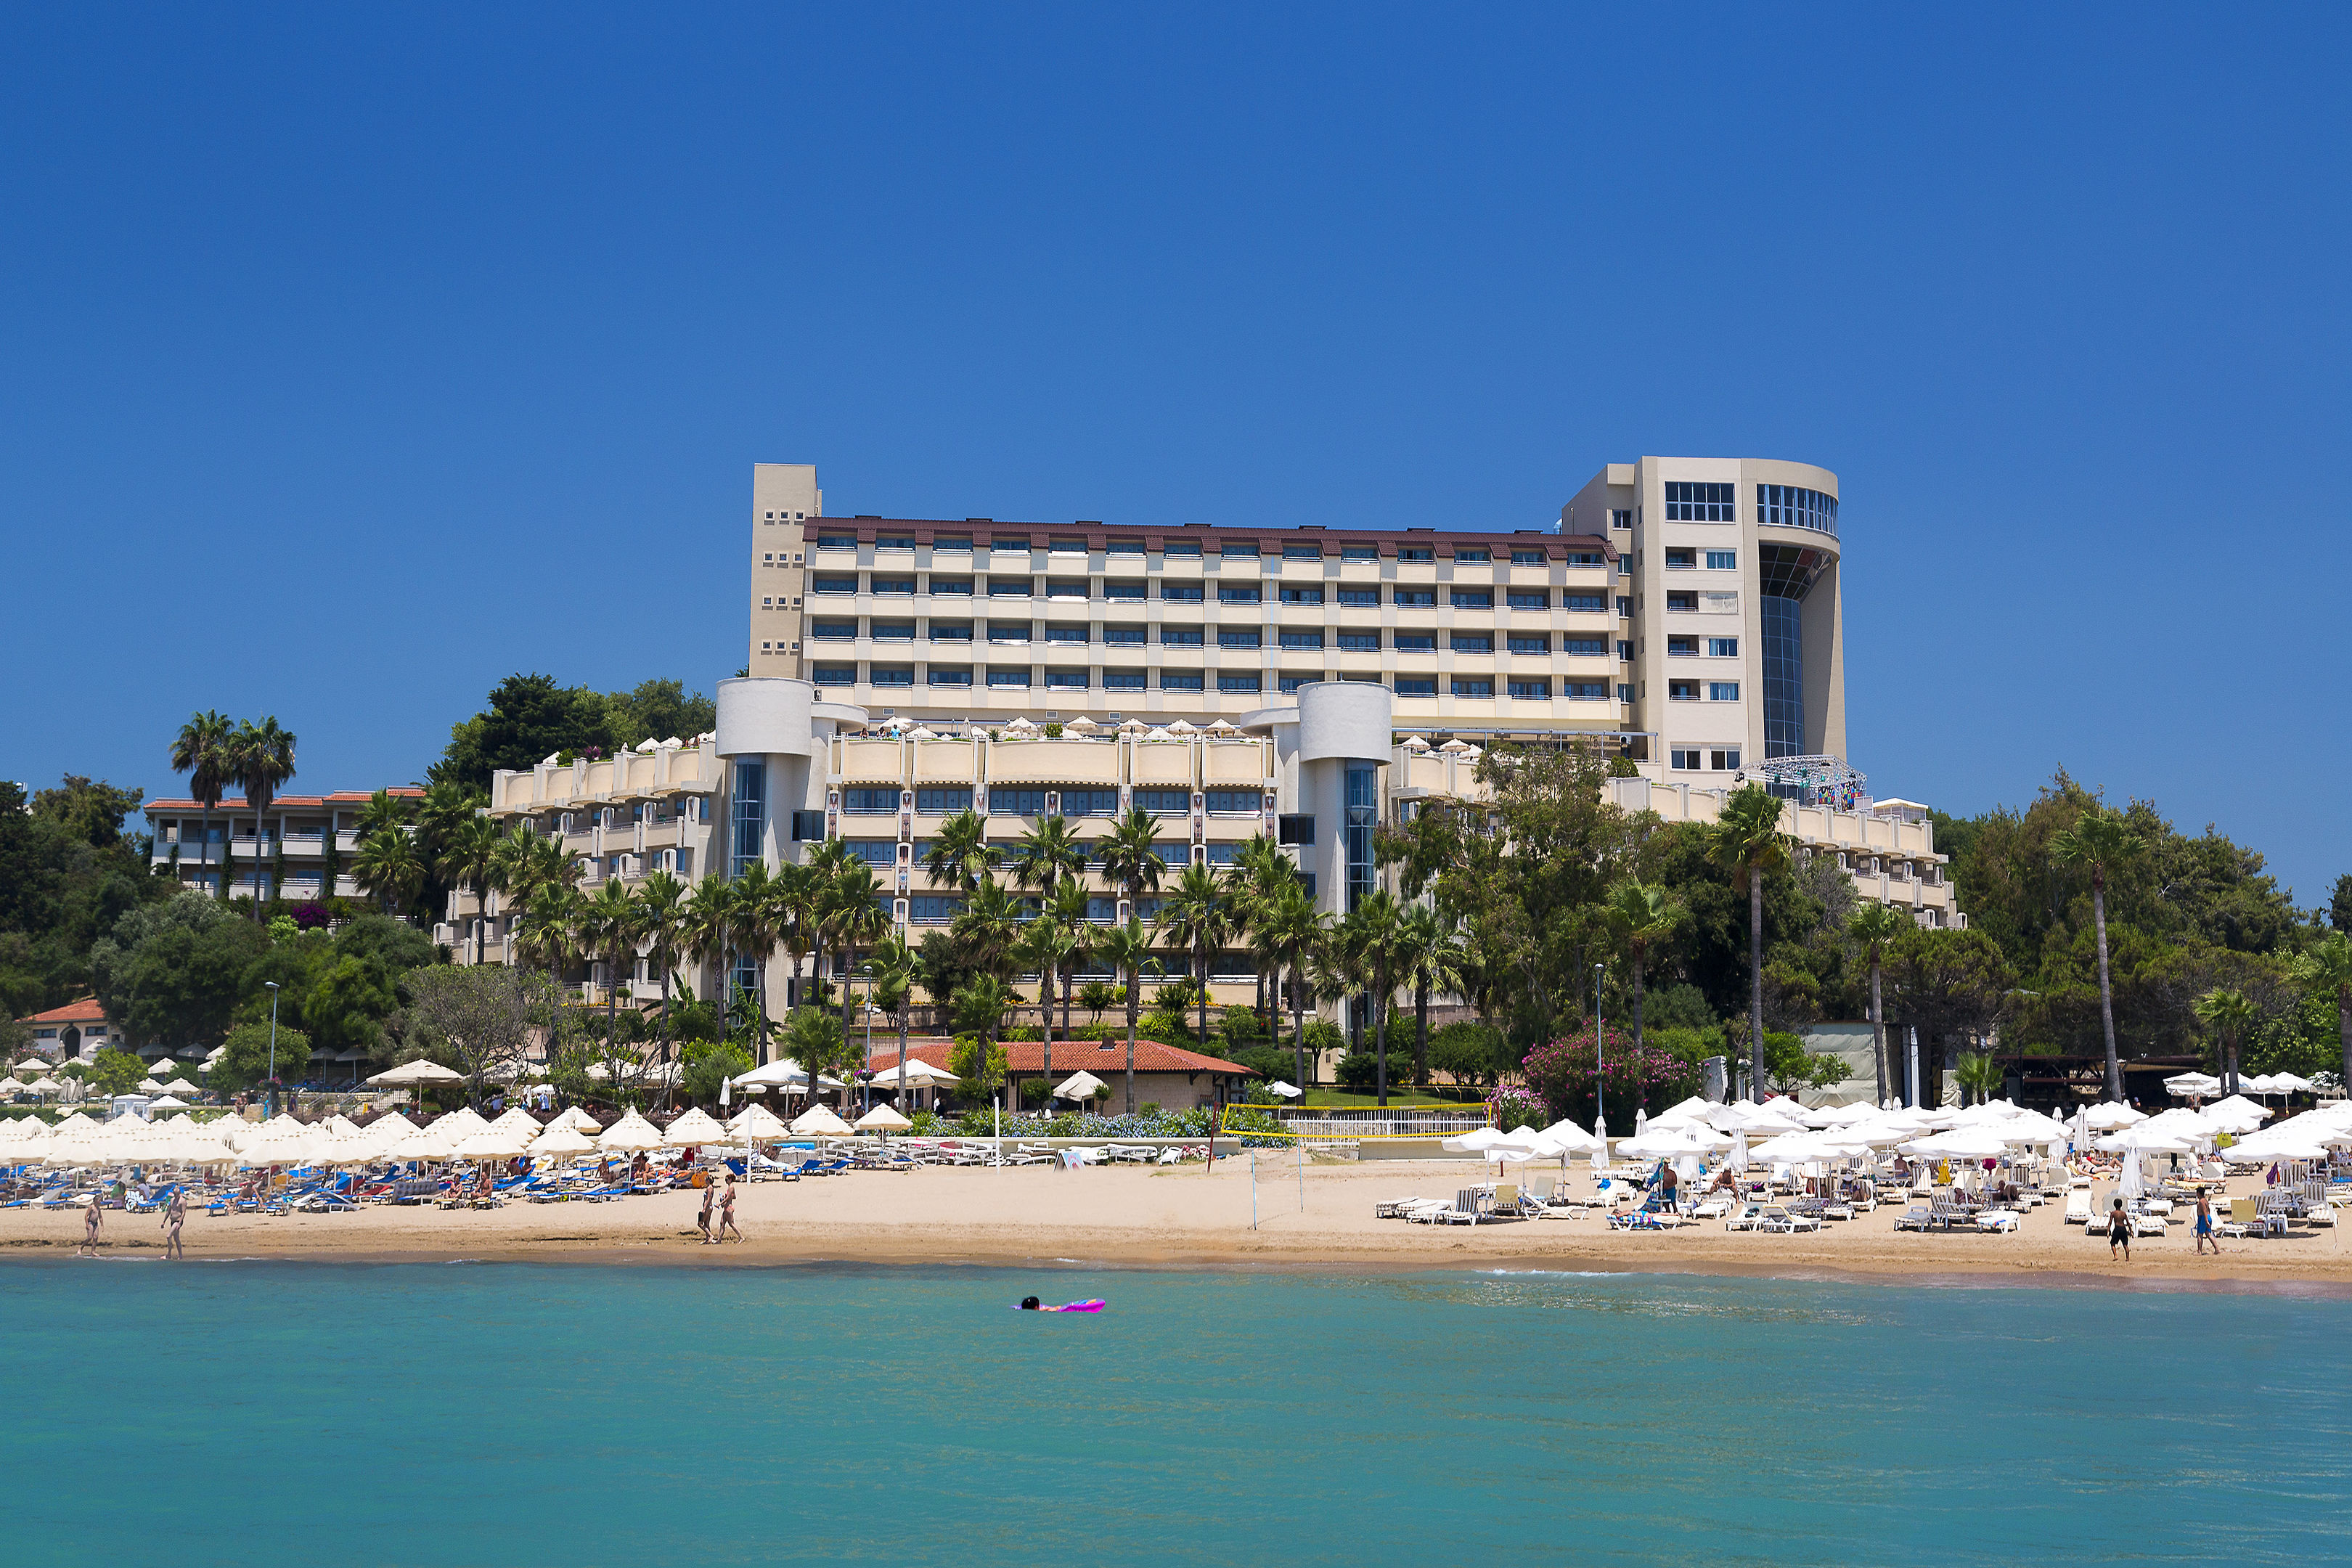 Melas Resort Hotel